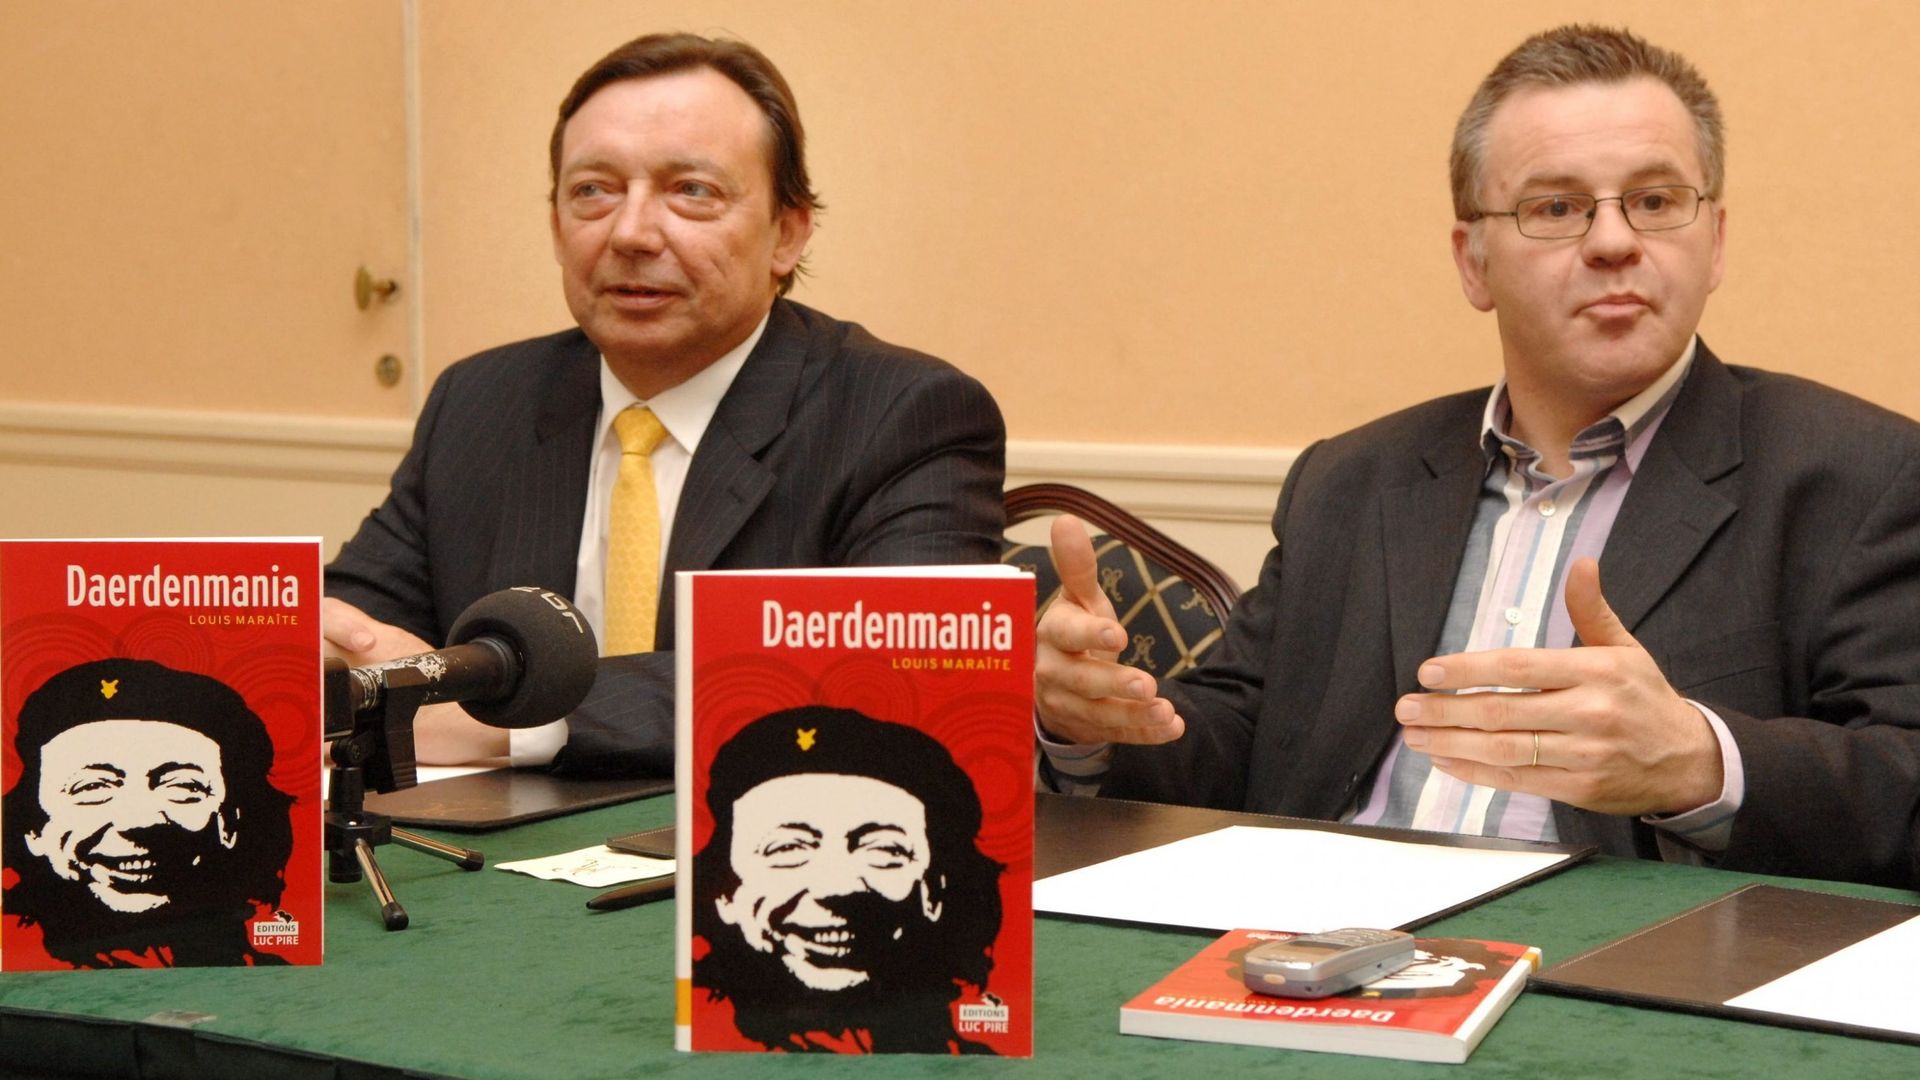 Louis Maraite avec Michel Daerden lors de la présentation de son livre Daerdenmania en 2007